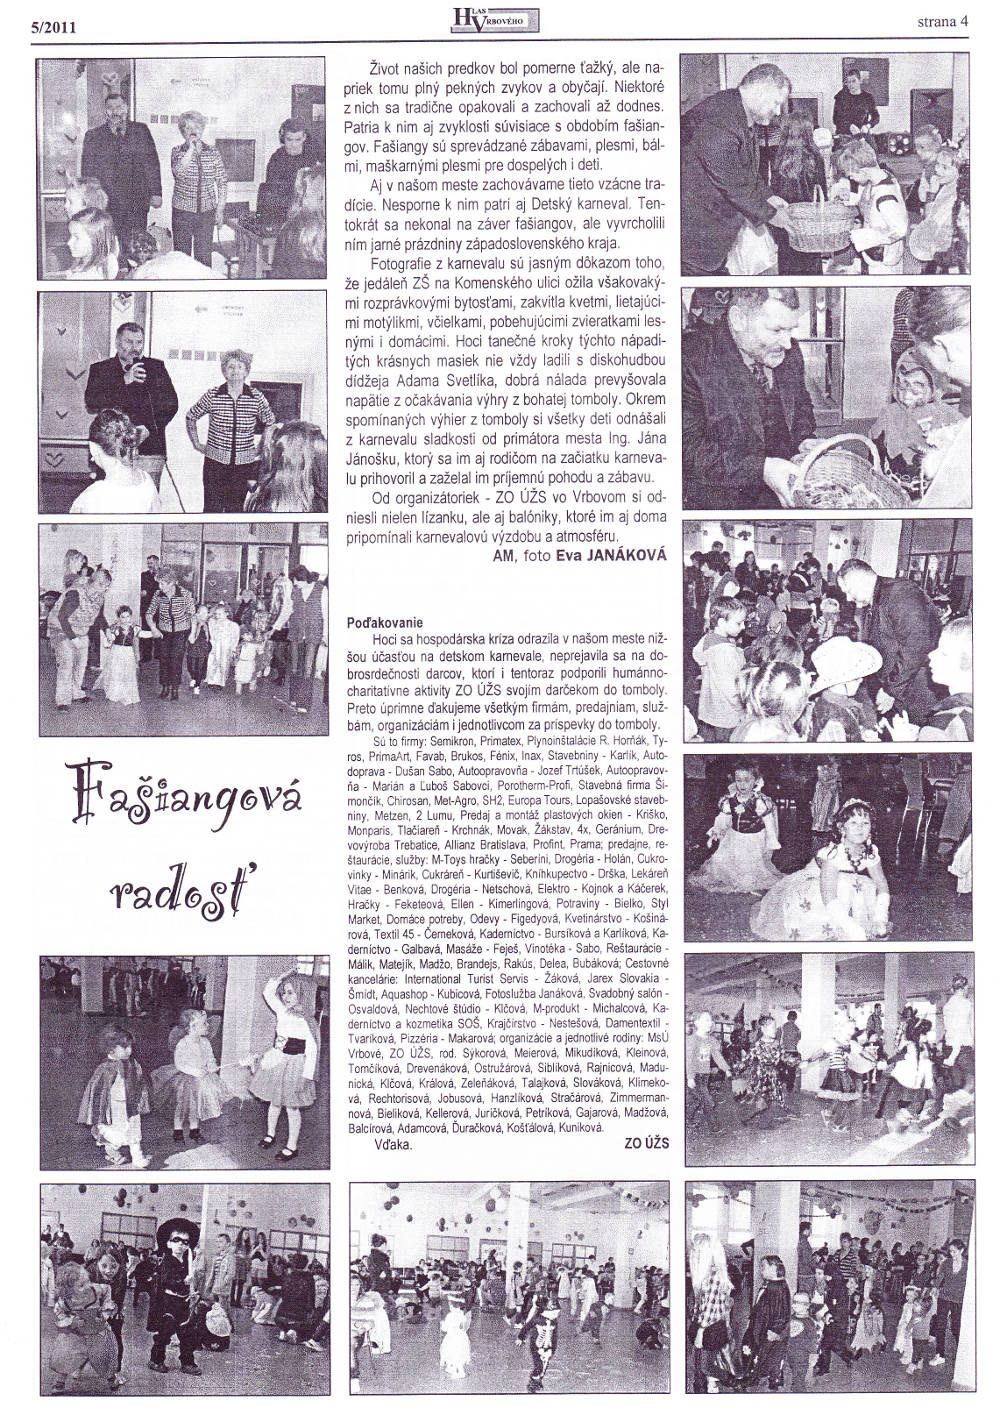 Hlas Vrbového 05/2011, strana 4